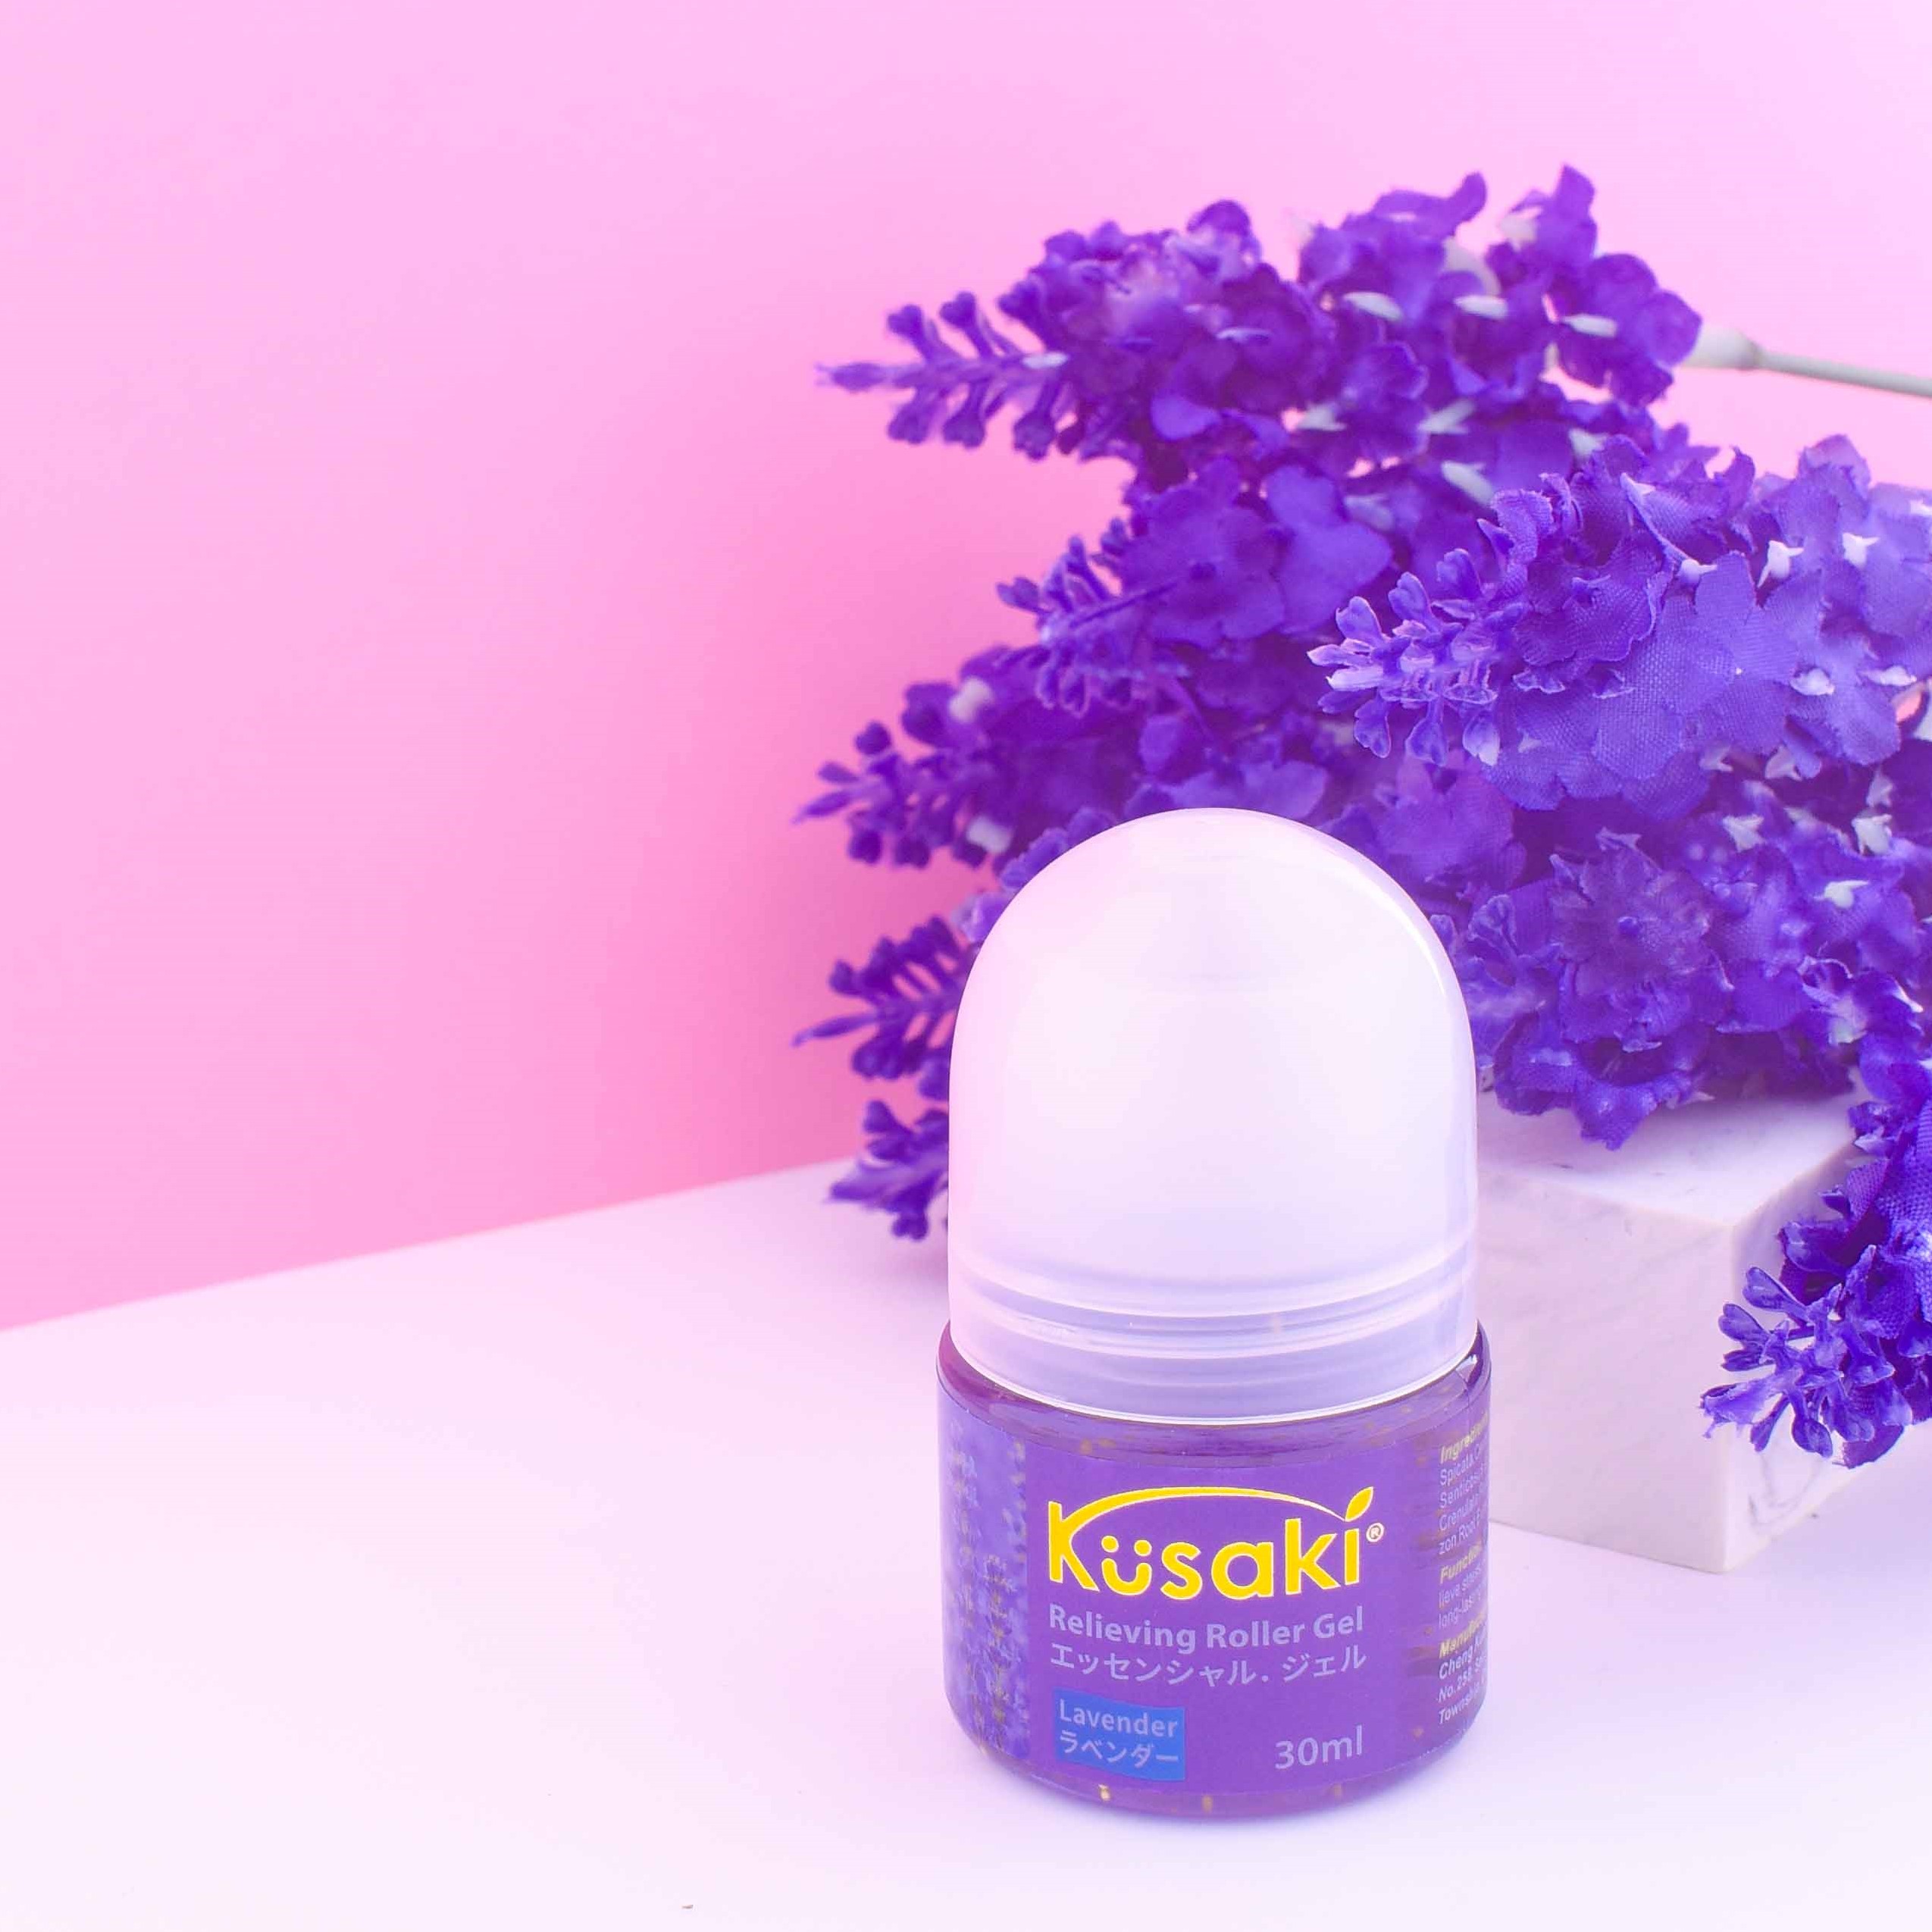 Tinh dầu thiên nhiên Kusaki dạng Gel - Lavender